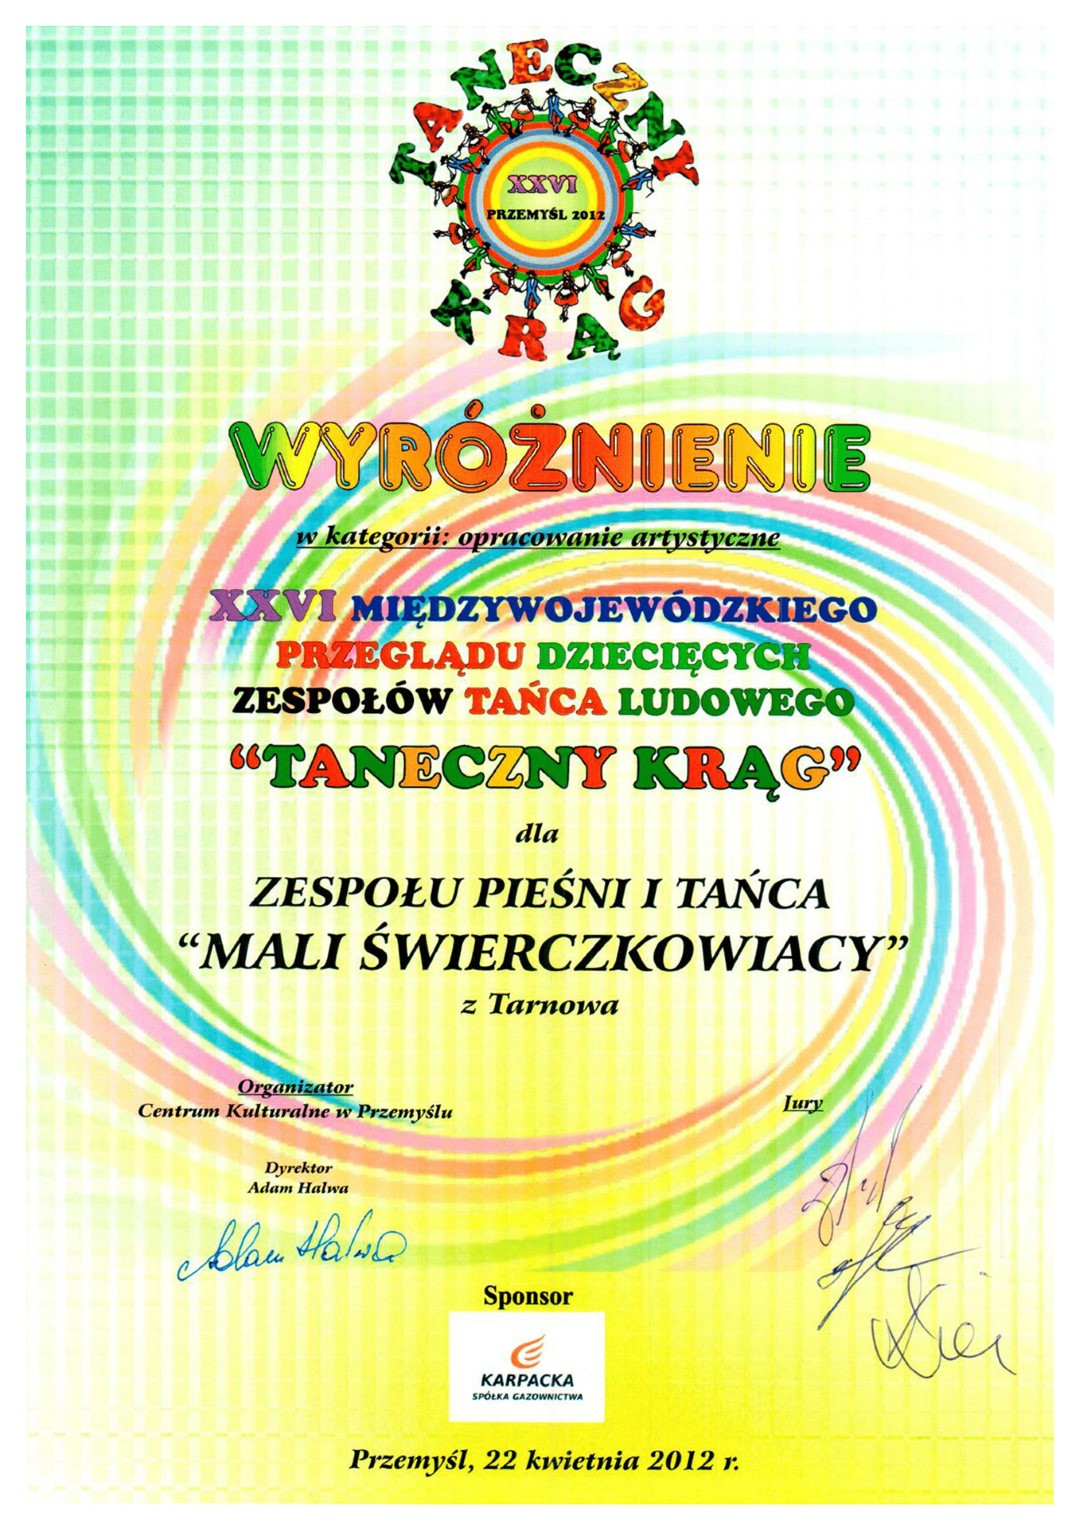 Wyróżnienie dla ZPiT Świerczkowiacy. Międzywojewódzki Przegląd Dziecięcych Zespołów Tańca Ludowego „Taneczny Krąg”. Przemyśl 2012